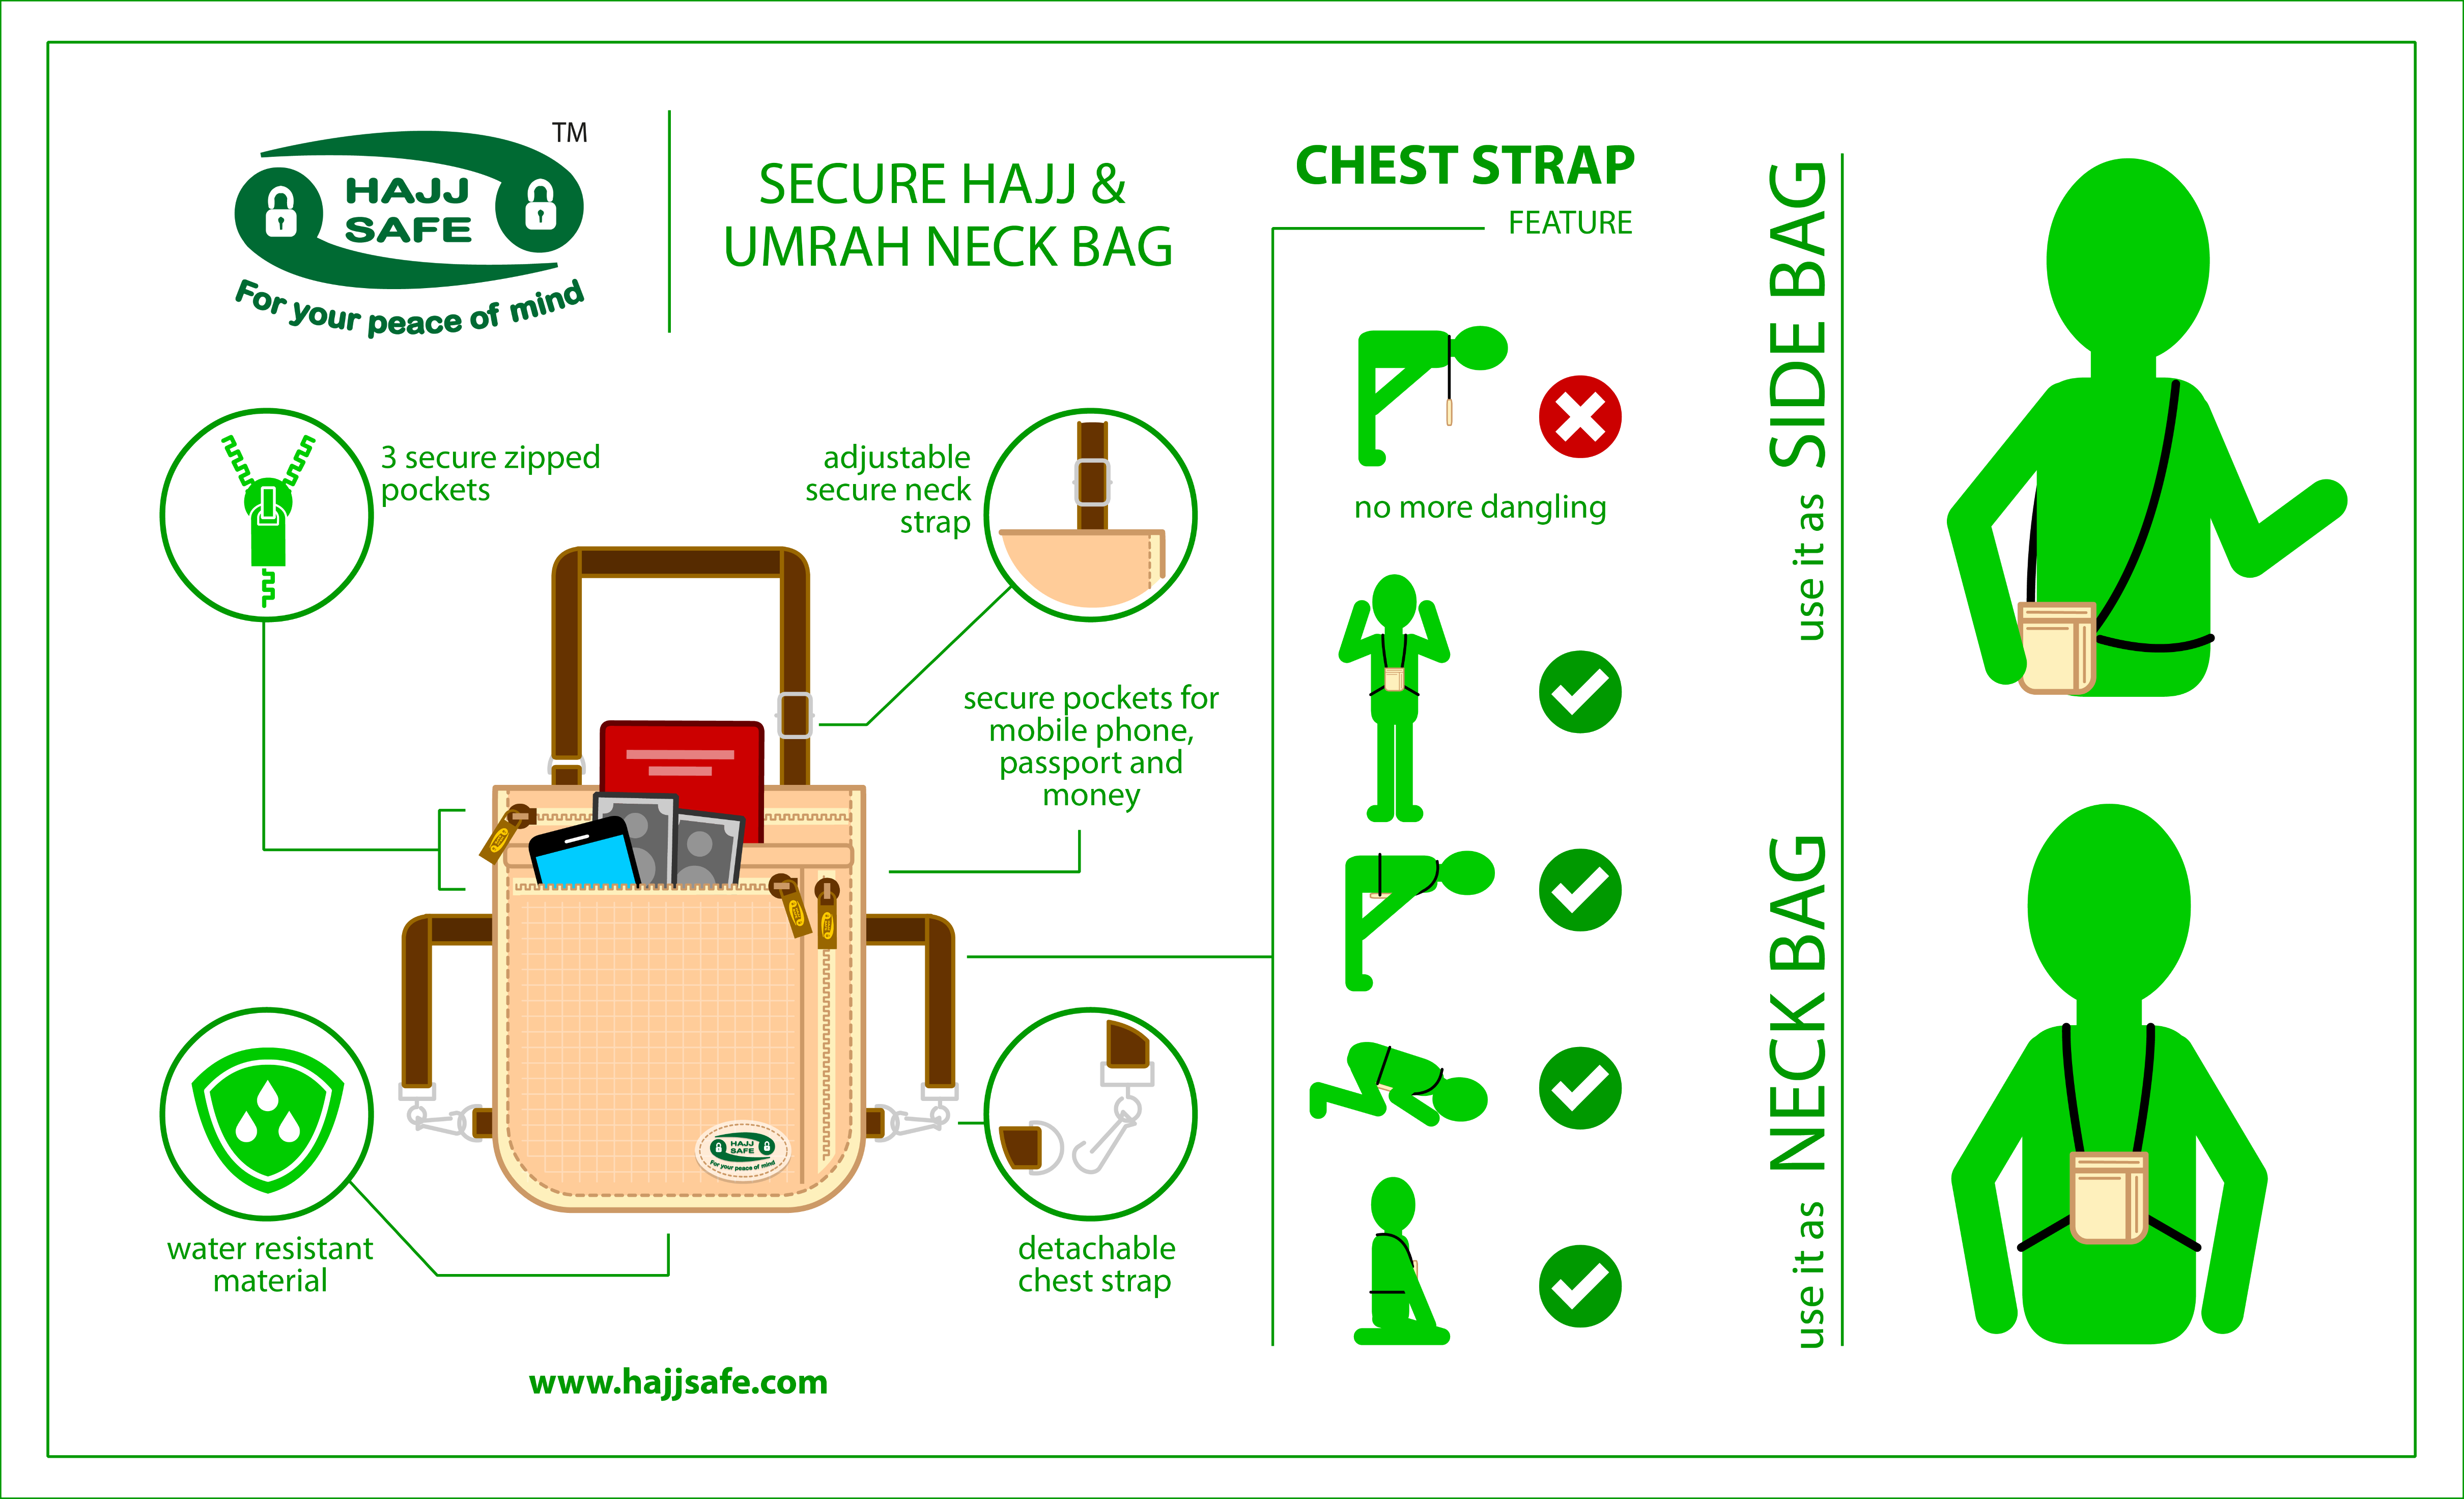 hajj-safe-secure-neck-bag-1.1.png